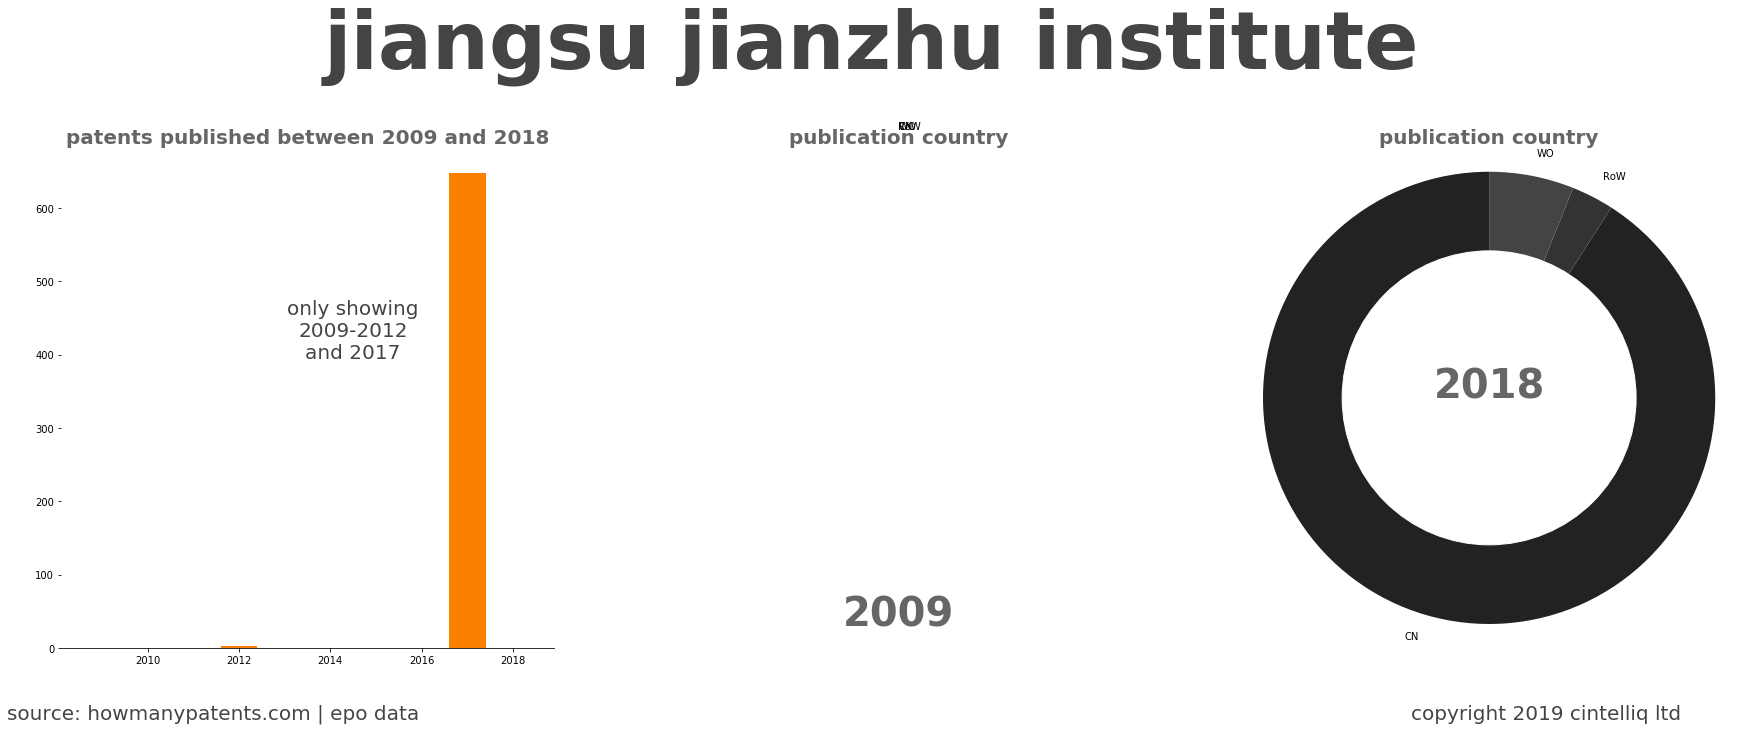 summary of patents for Jiangsu Jianzhu Institute